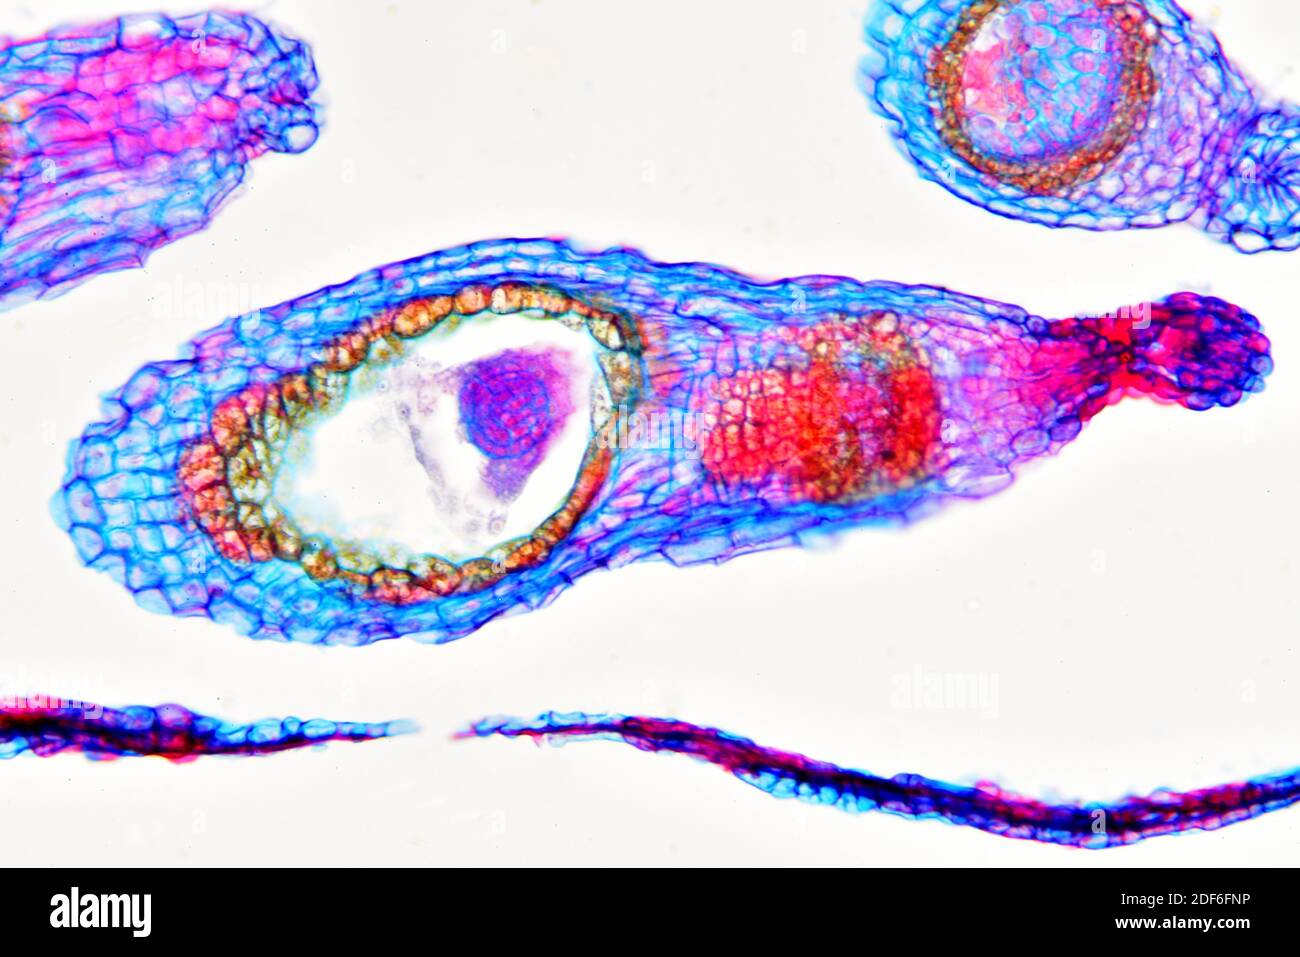 Ovaire avec embryons de bergers (Capsella bursa-pastoris). Microscope optique X200. Banque D'Images